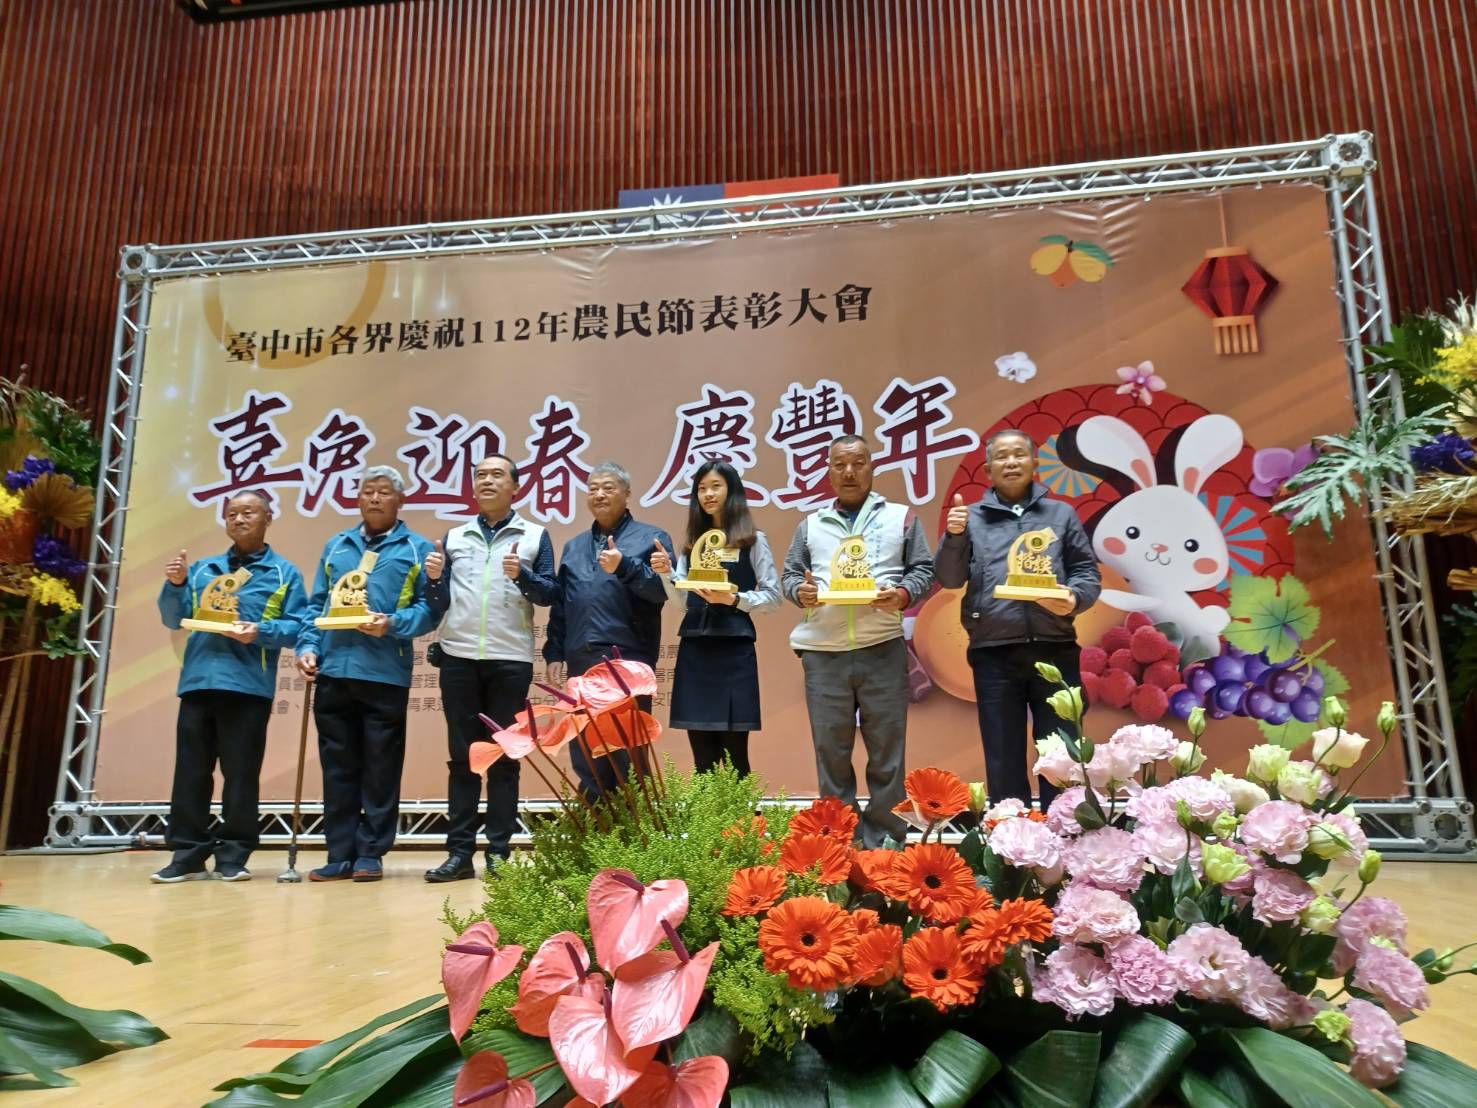 臺中市各界慶祝112年度農民節表彰大會